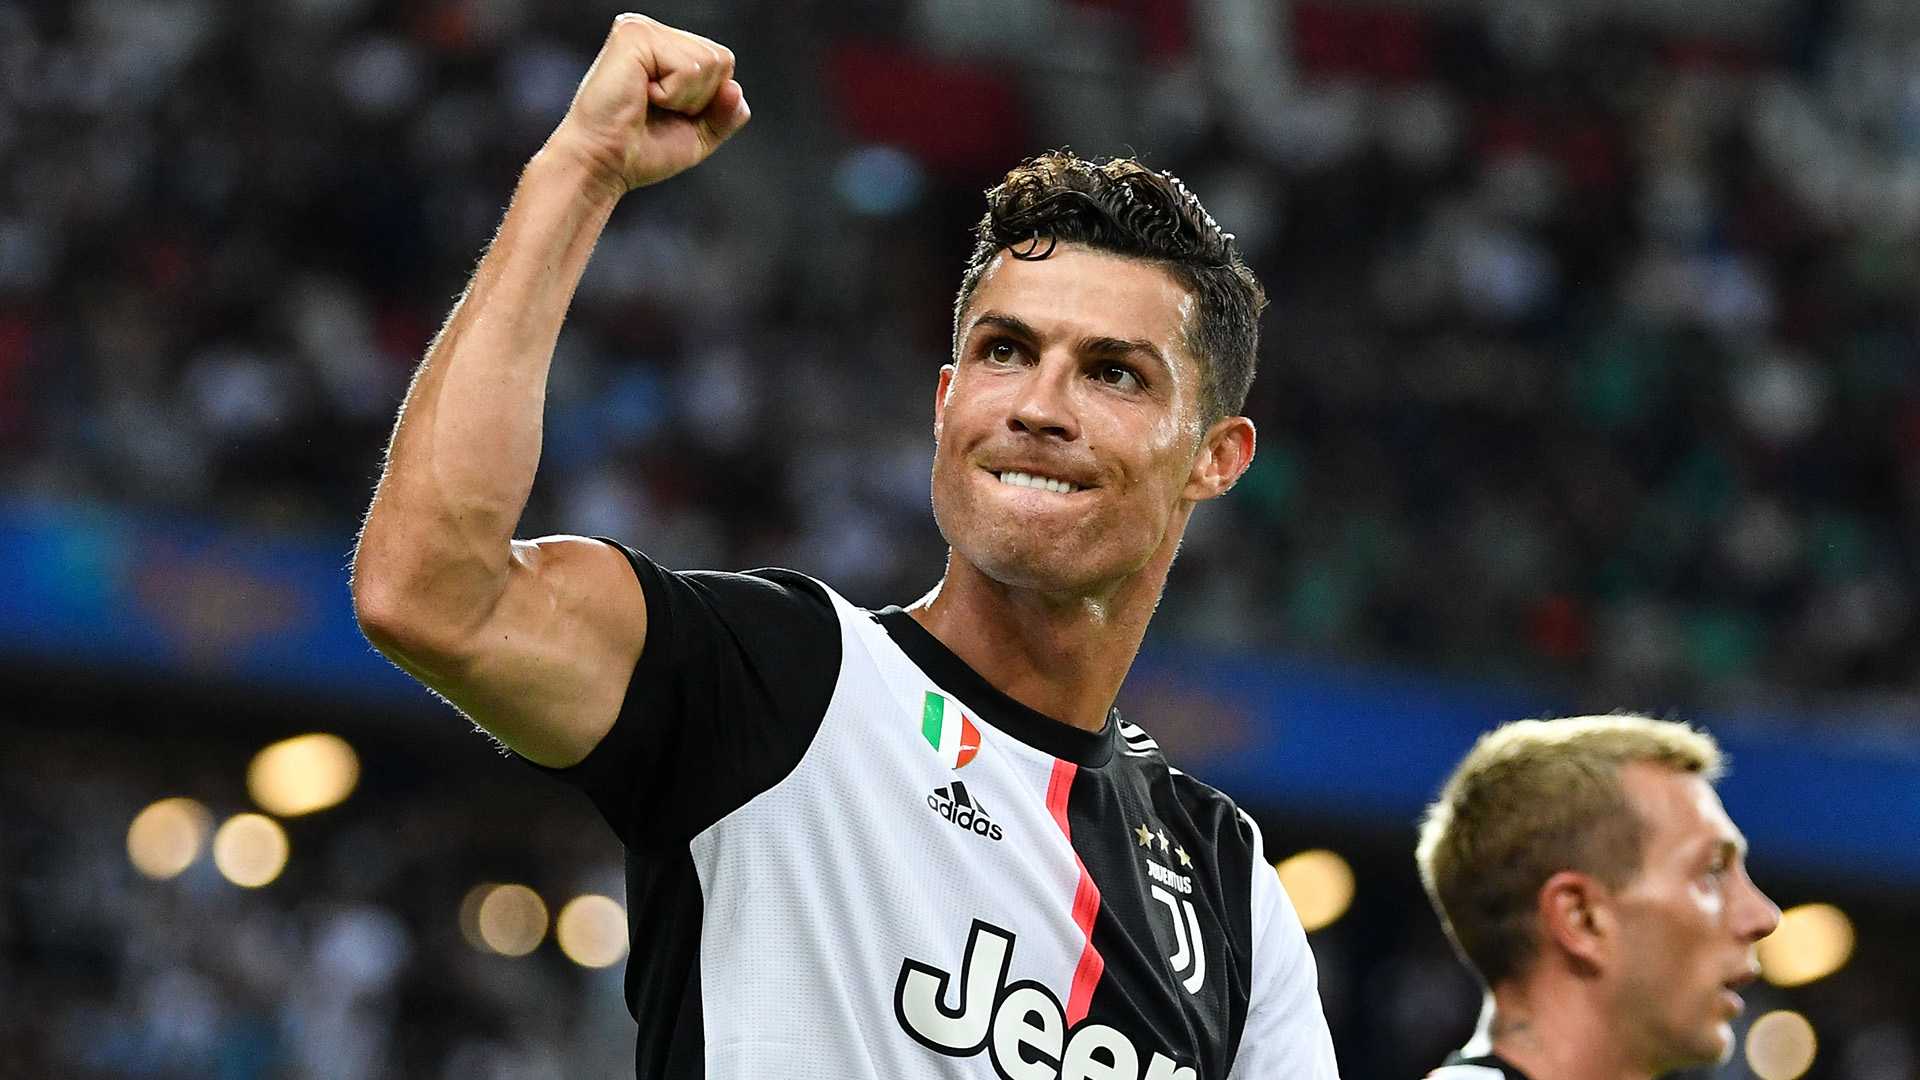 Le pagelle di Juventus-Cagliari (2-0): la decide Ronaldo